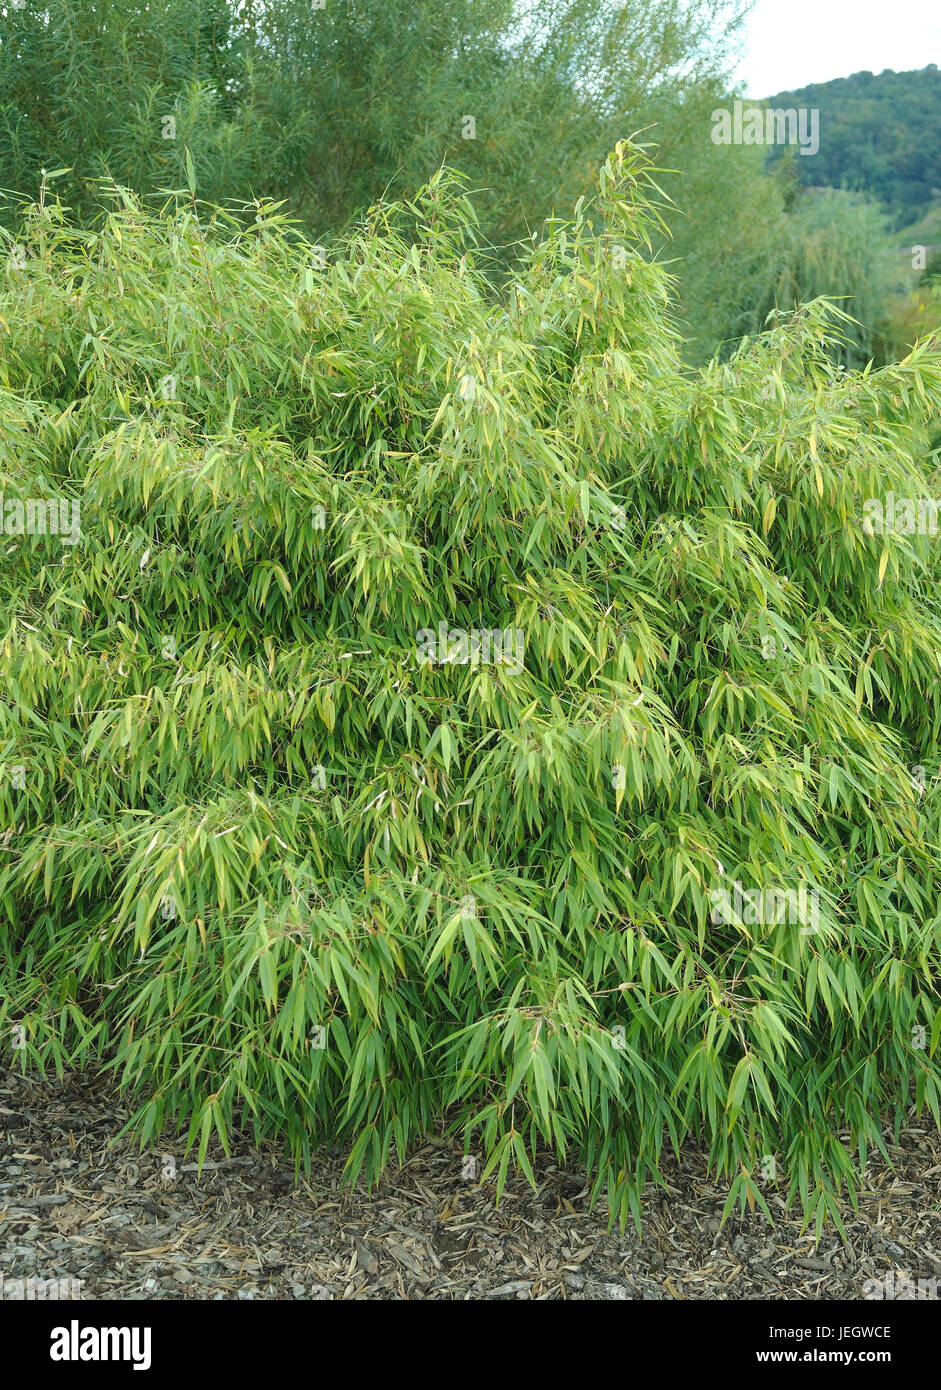 bamboo, Fargesia (Fargesia rufa Stock Photo - Alamy